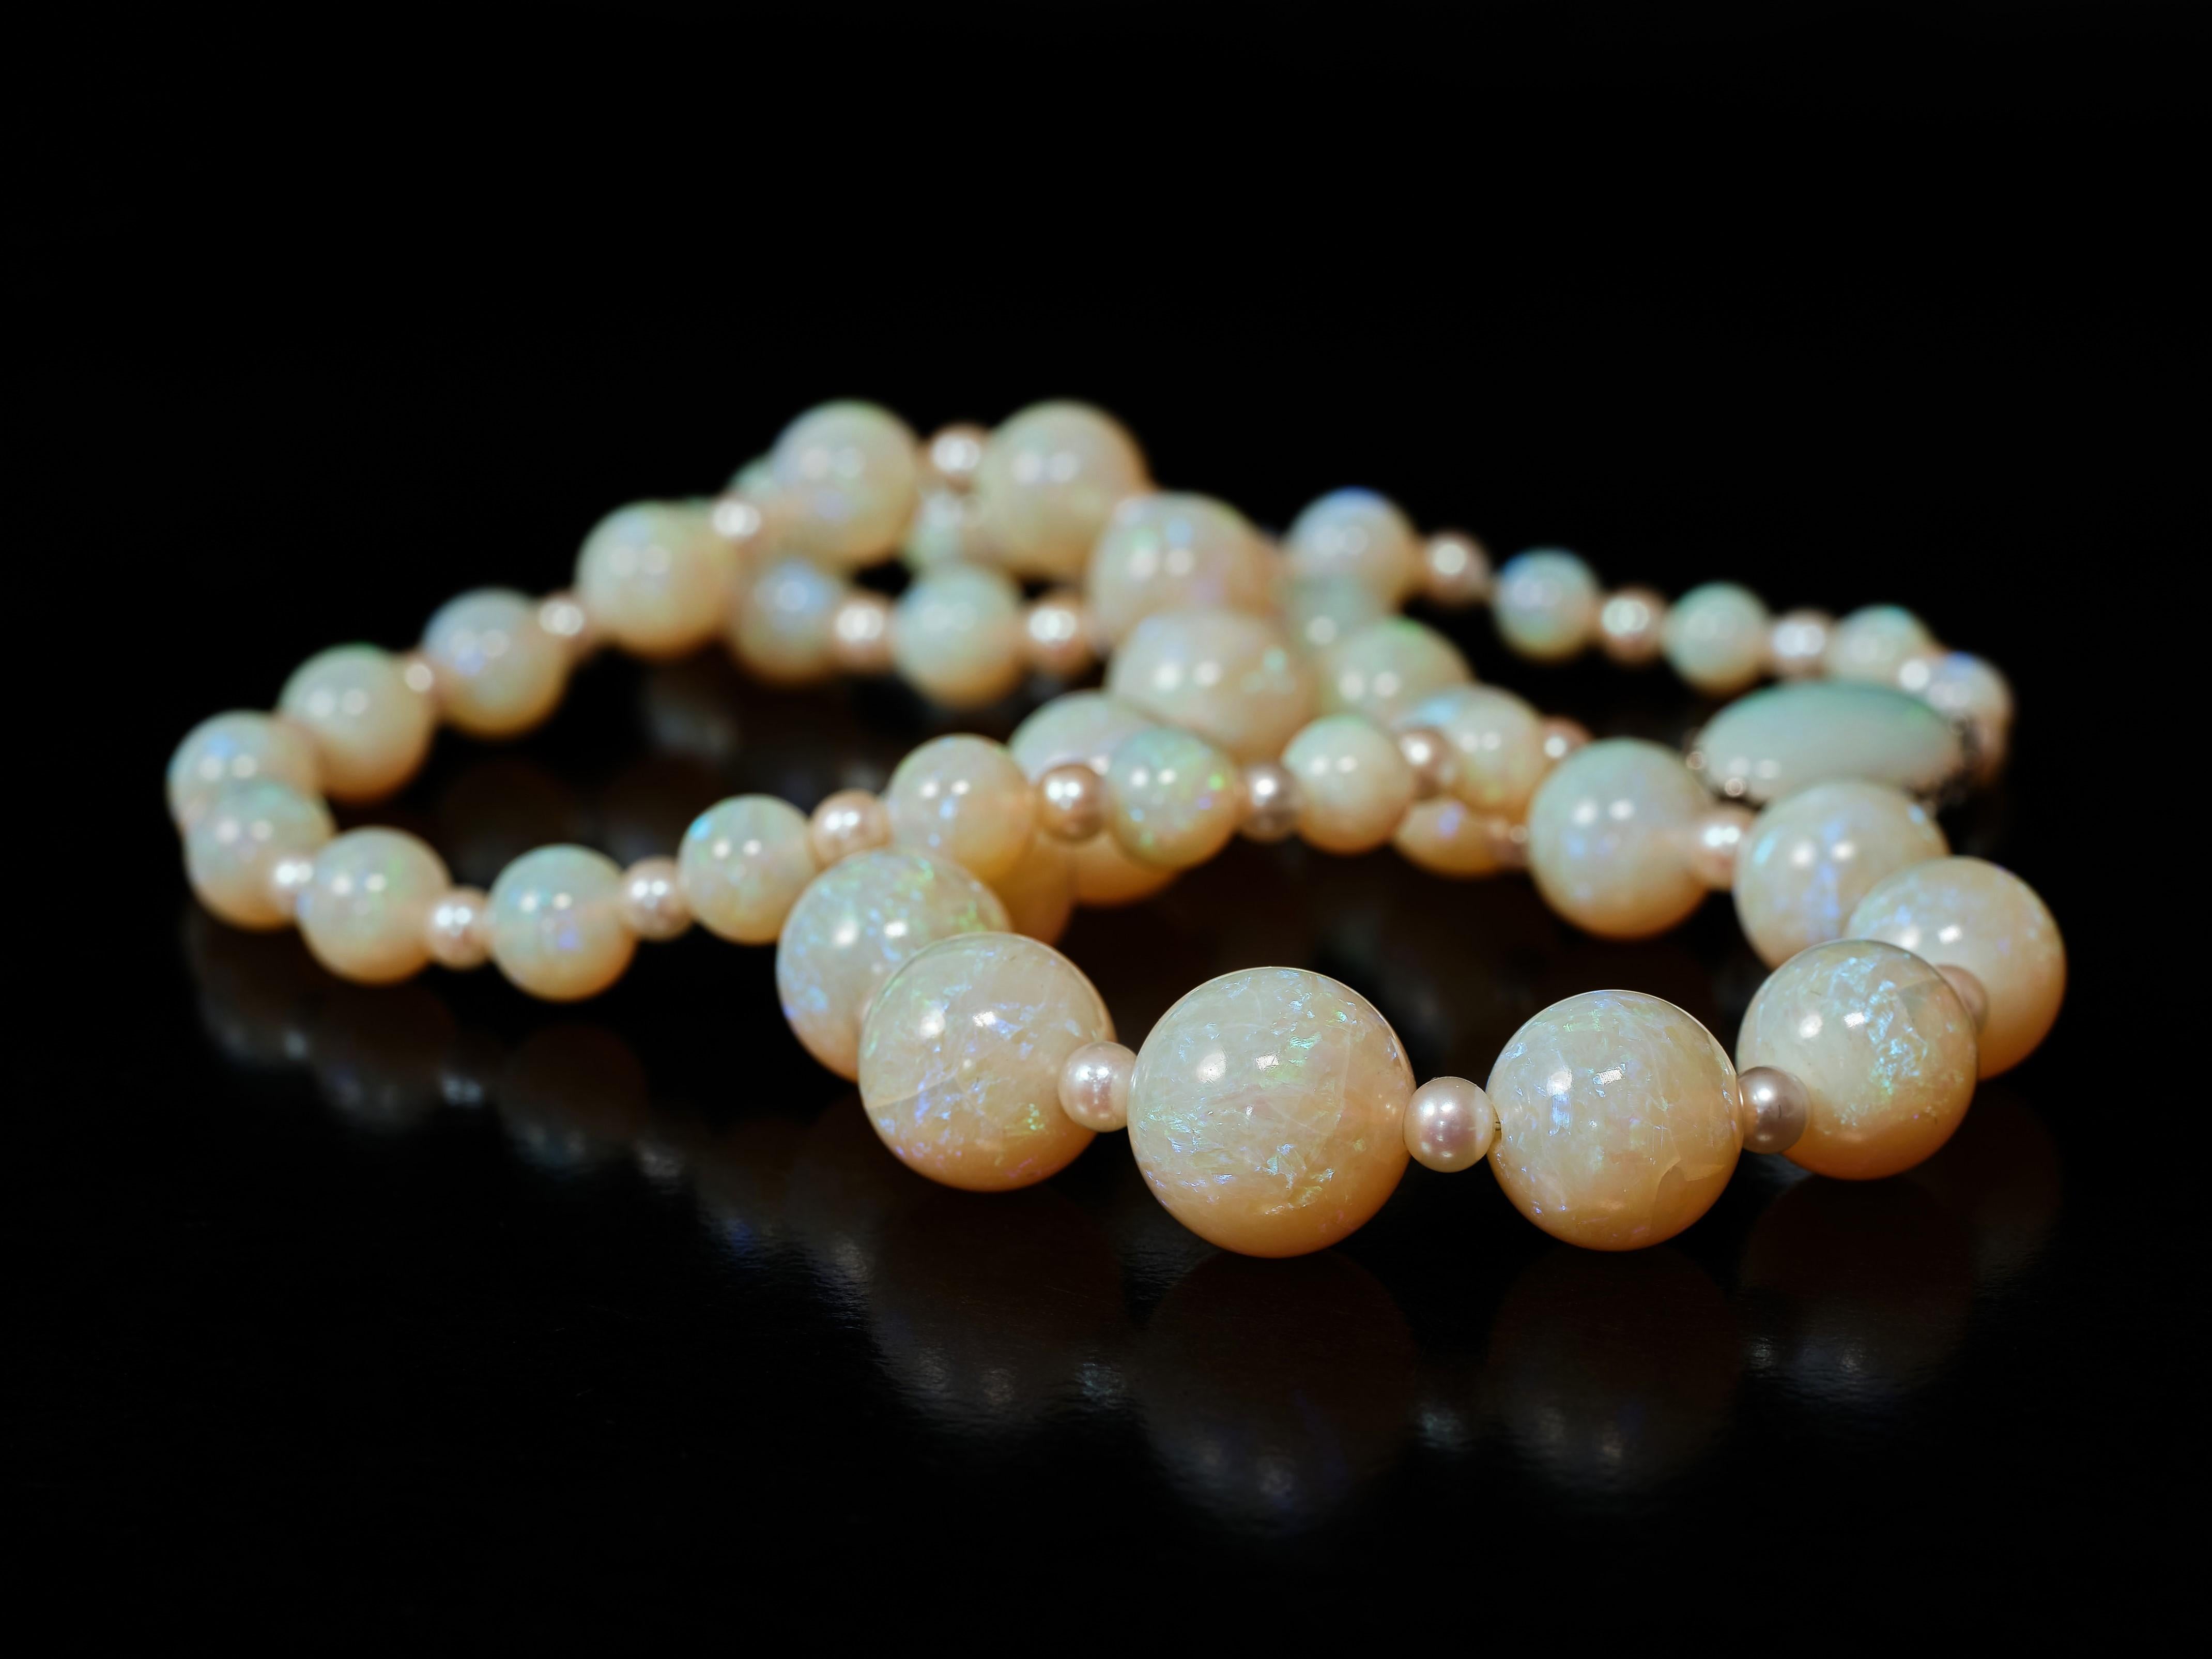 42 magnifiques perles d'opale multi-chromatiques, légèrement graduées et imprégnées d'éclairs, alternent avec de petites perles de taille égale pour créer ce collier enchanteur. Les perles vont de 5 millimètres à 13 millimètres impressionnants. Il